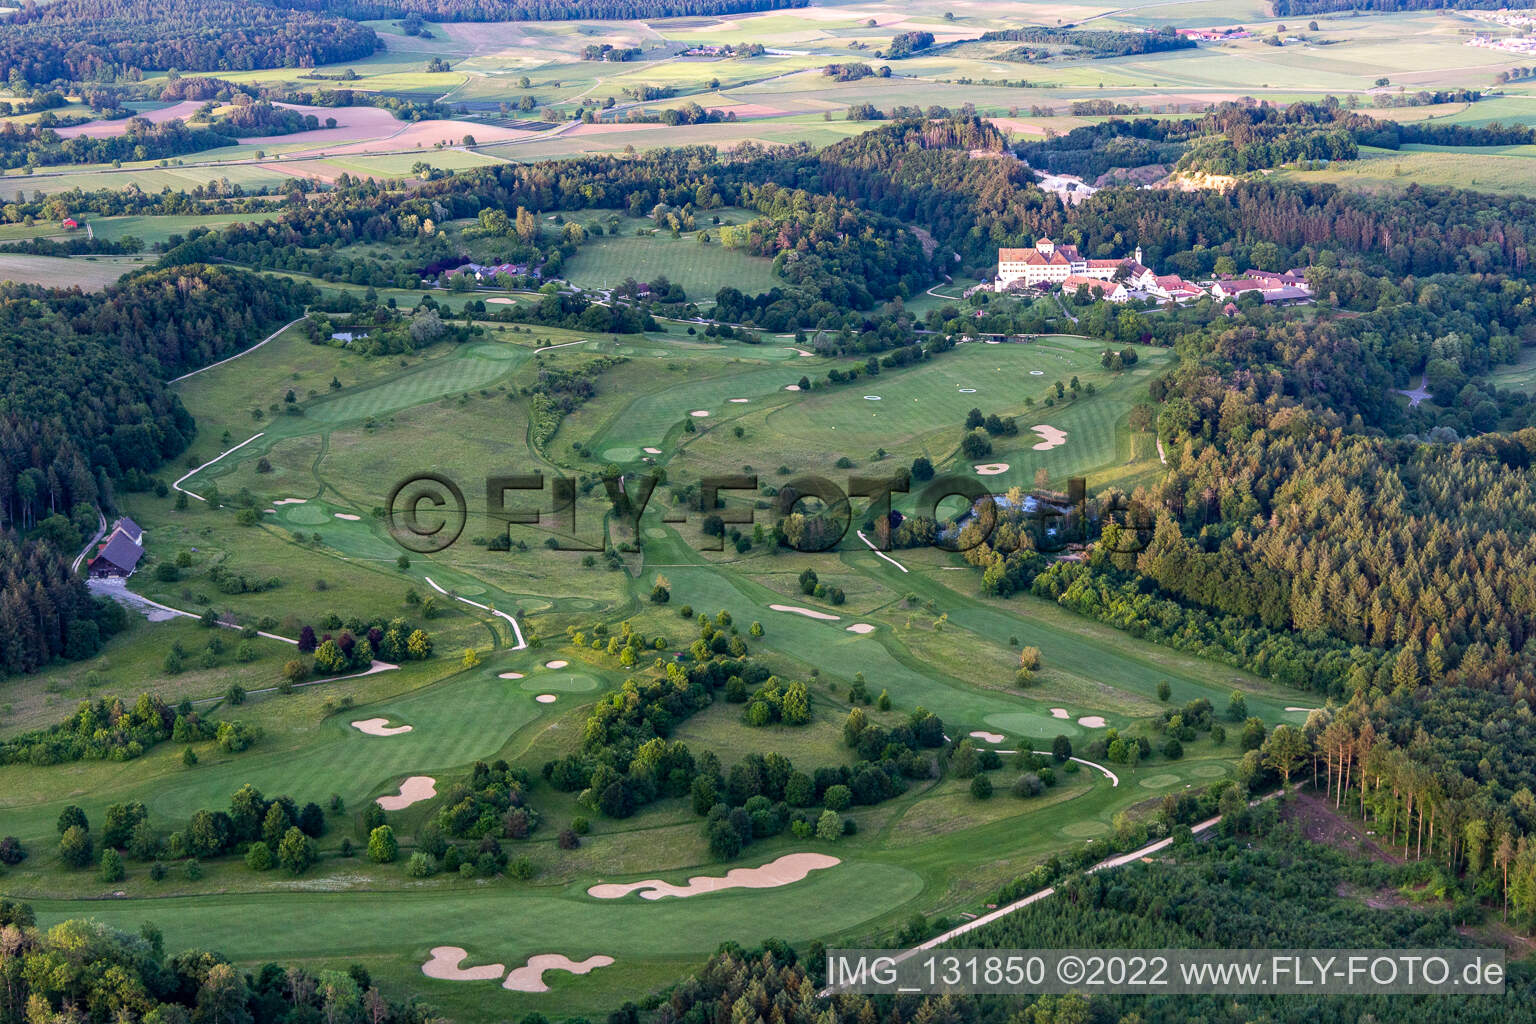 Der Country Club Schloss Langenstein - Der Golfplatz am Bodensee in Orsingen-Nenzingen im Bundesland Baden-Württemberg, Deutschland aus der Luft betrachtet